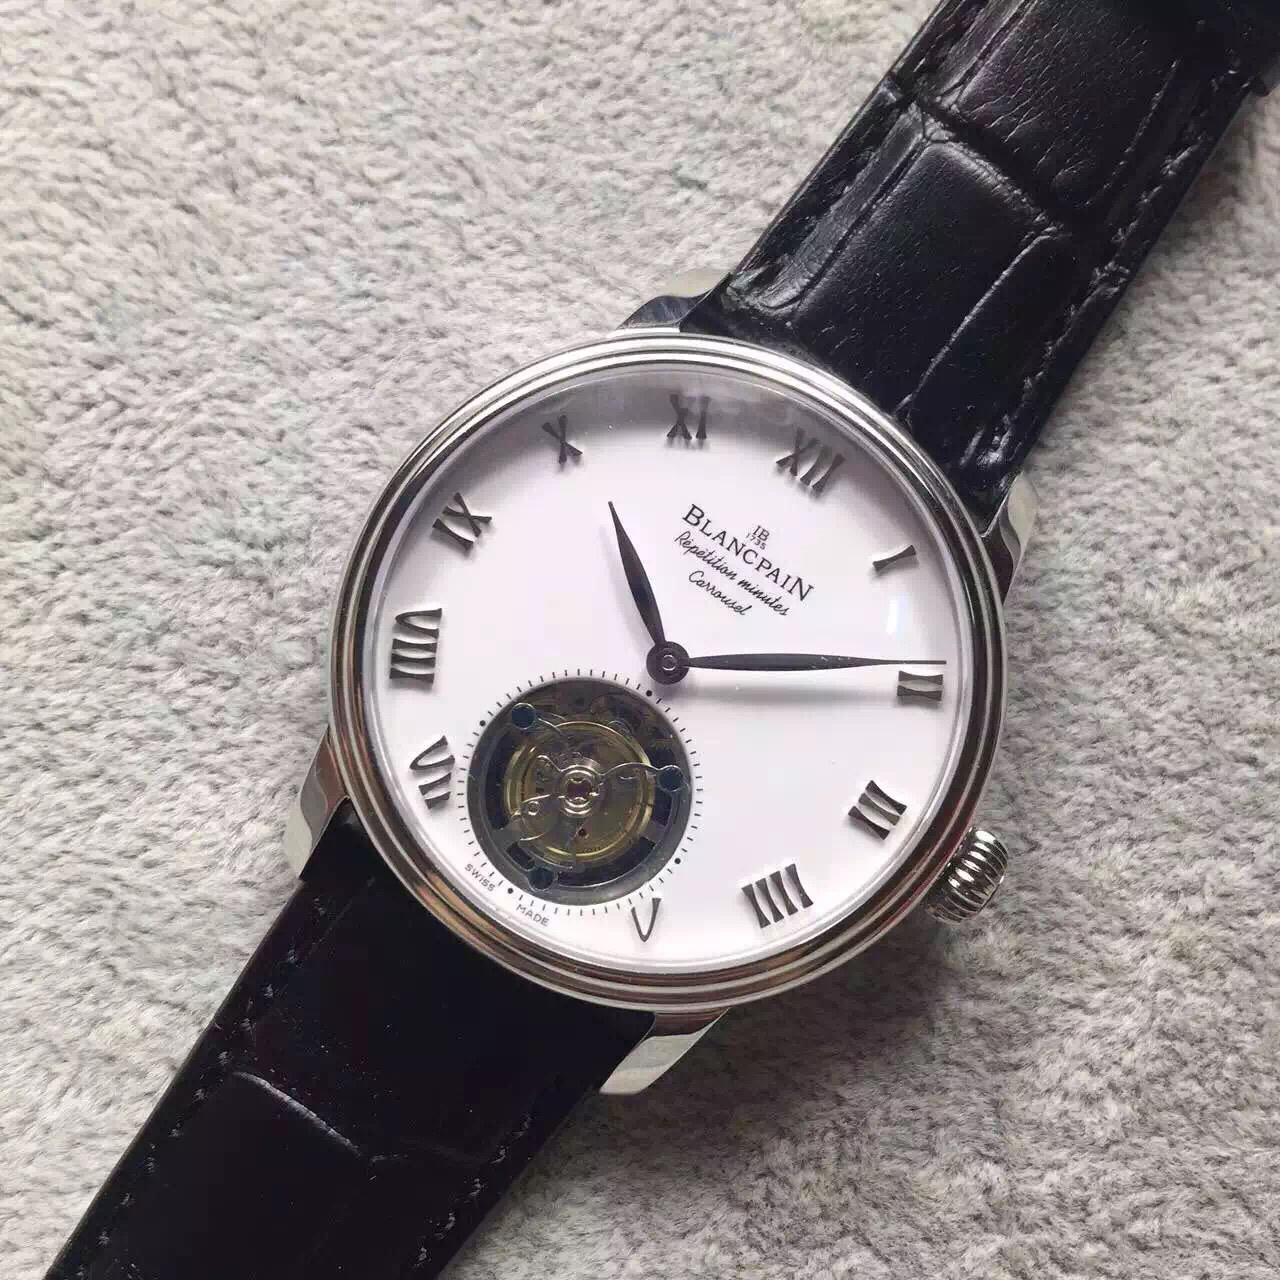 2023052702481914 - 復刻手錶寶珀手錶在哪買 LH寶珀佈拉蘇斯陀飛輪￥5880